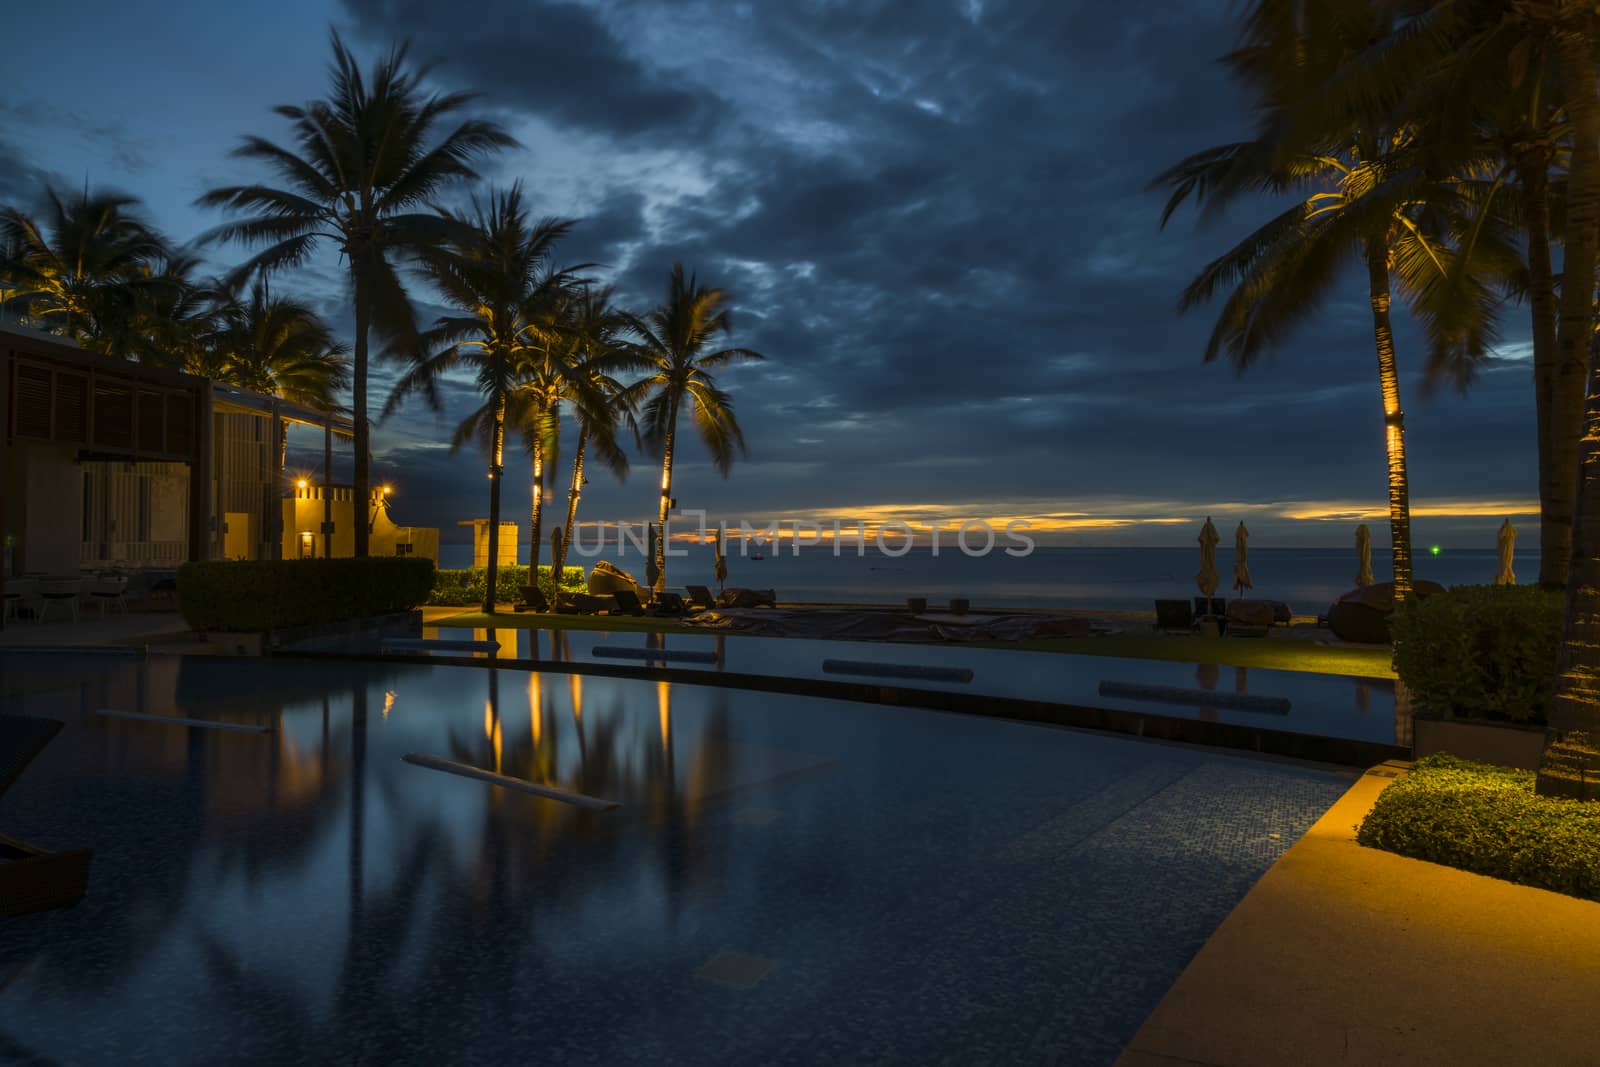 A beautiful dawn in a tropical resort.